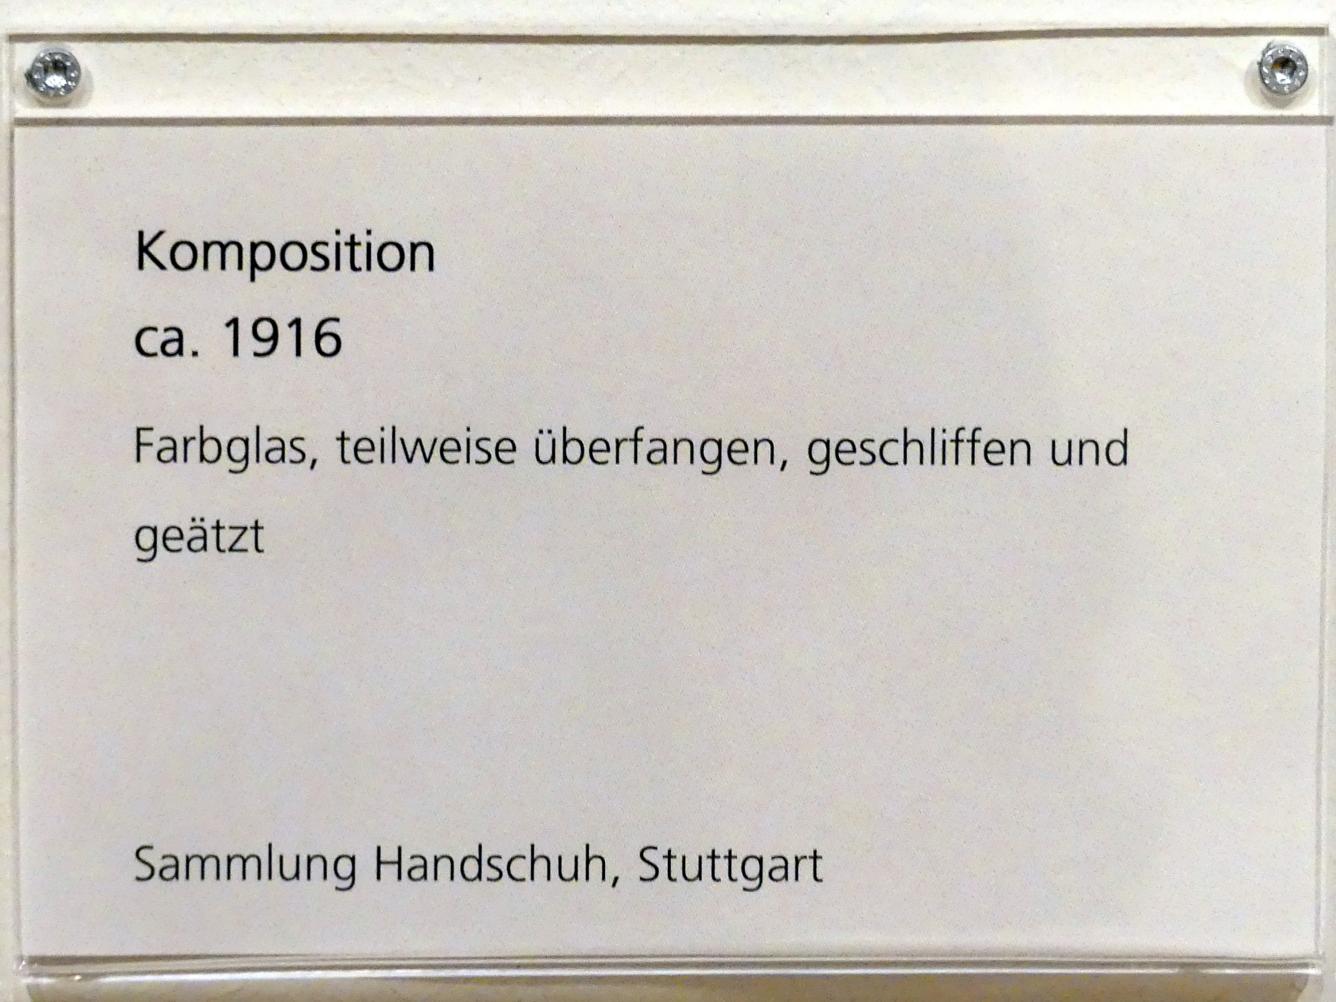 Adolf Hölzel (1880–1933), Komposition, Schweinfurt, Museum Georg Schäfer, Ausstellung Adolf Hölzel vom 03.02.-01.05.2019, Saal 3, um 1916, Bild 2/2